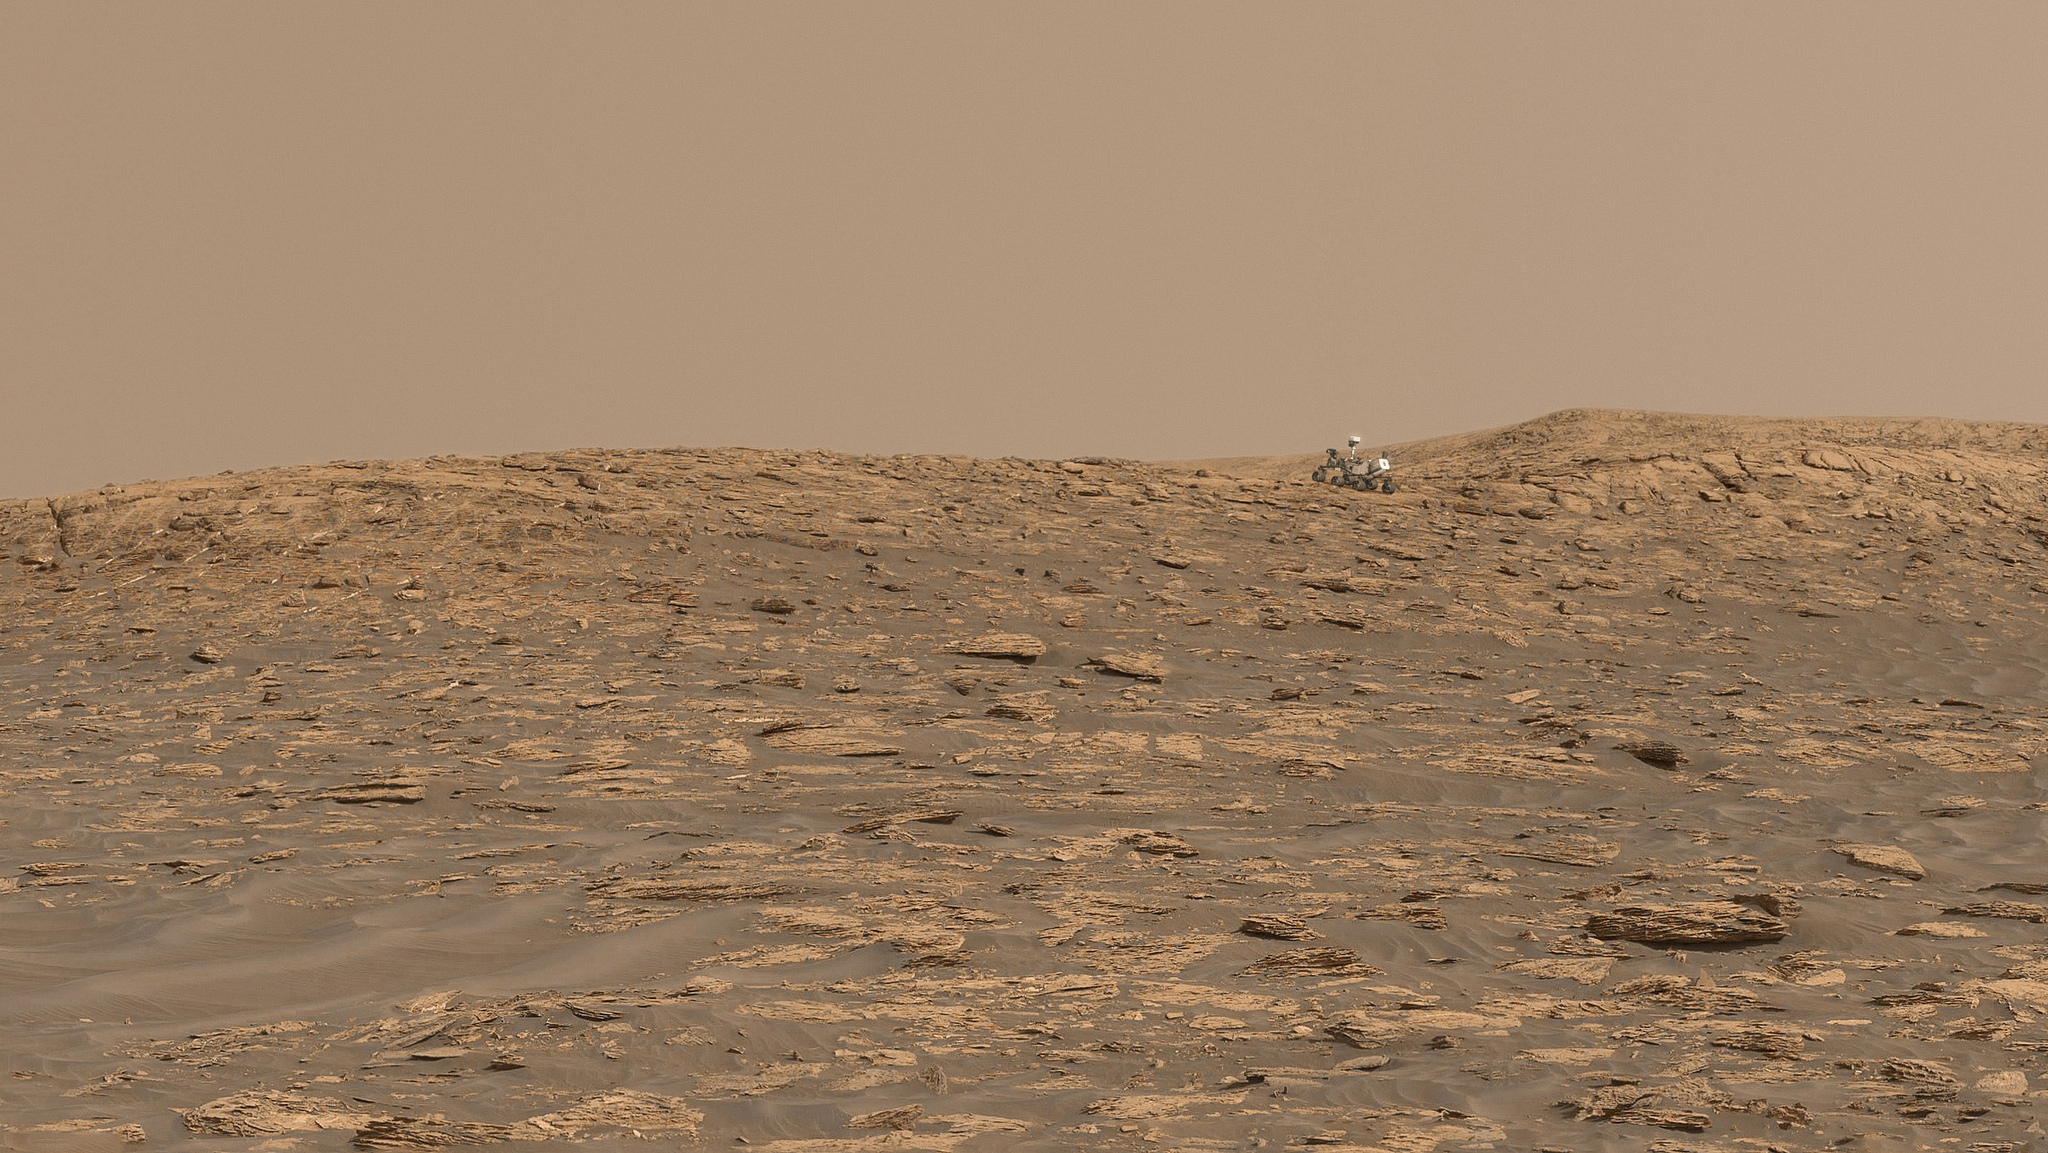 Paysage martien autour de Curiosity. Le rover, mis à la bonne échelle, a été superposé à l’image originale. © Sean Doran, Nasa, JPL-Caltech